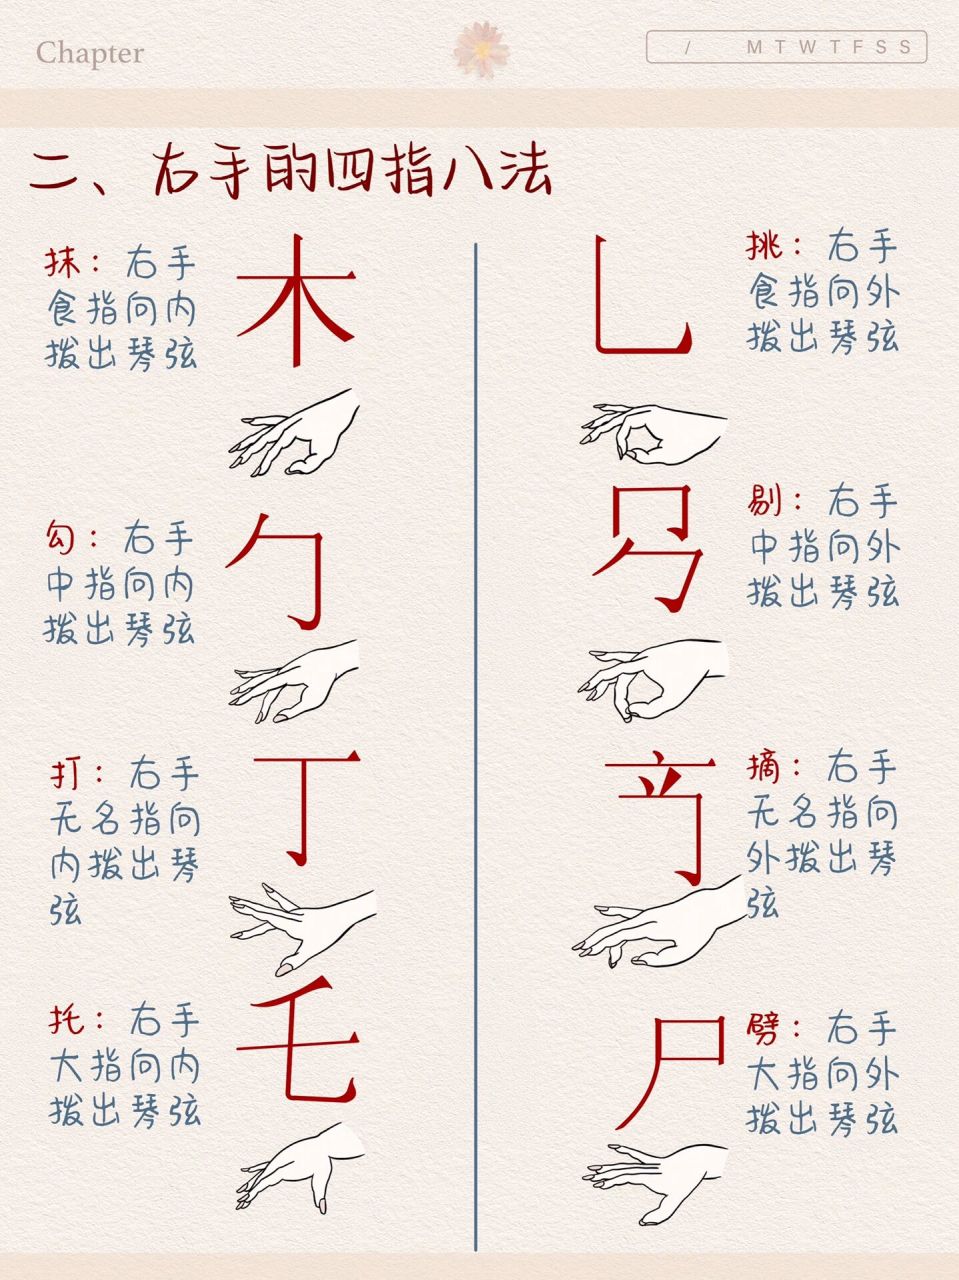 古琴指法符号表图片